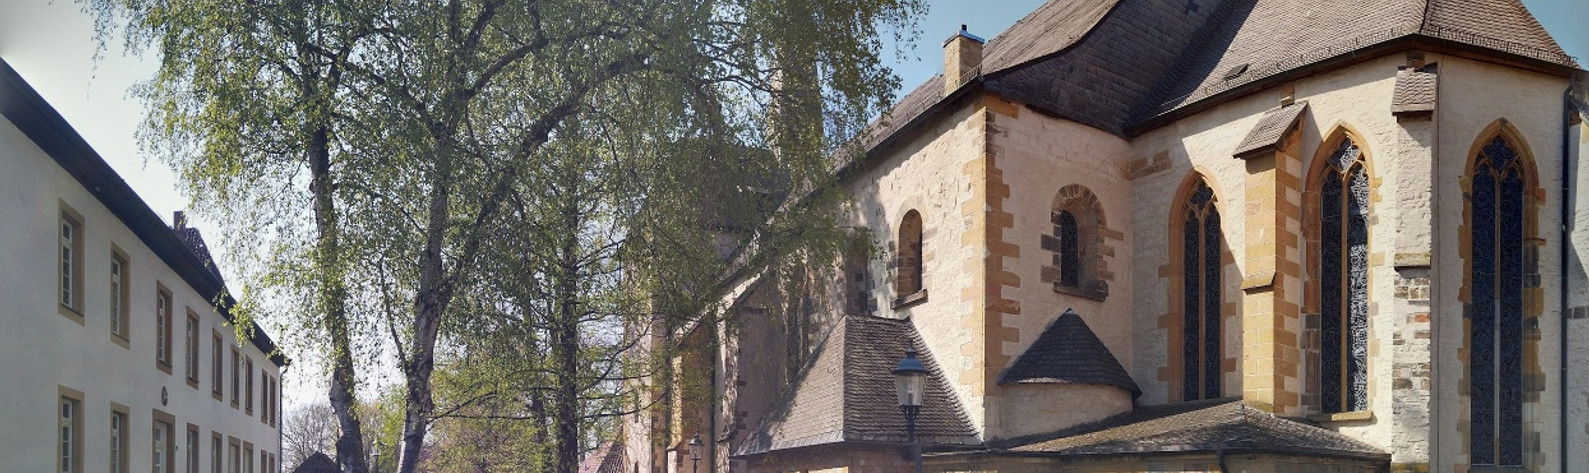 Pfarrkirche St. Laurentius, Clarholz am Kloster